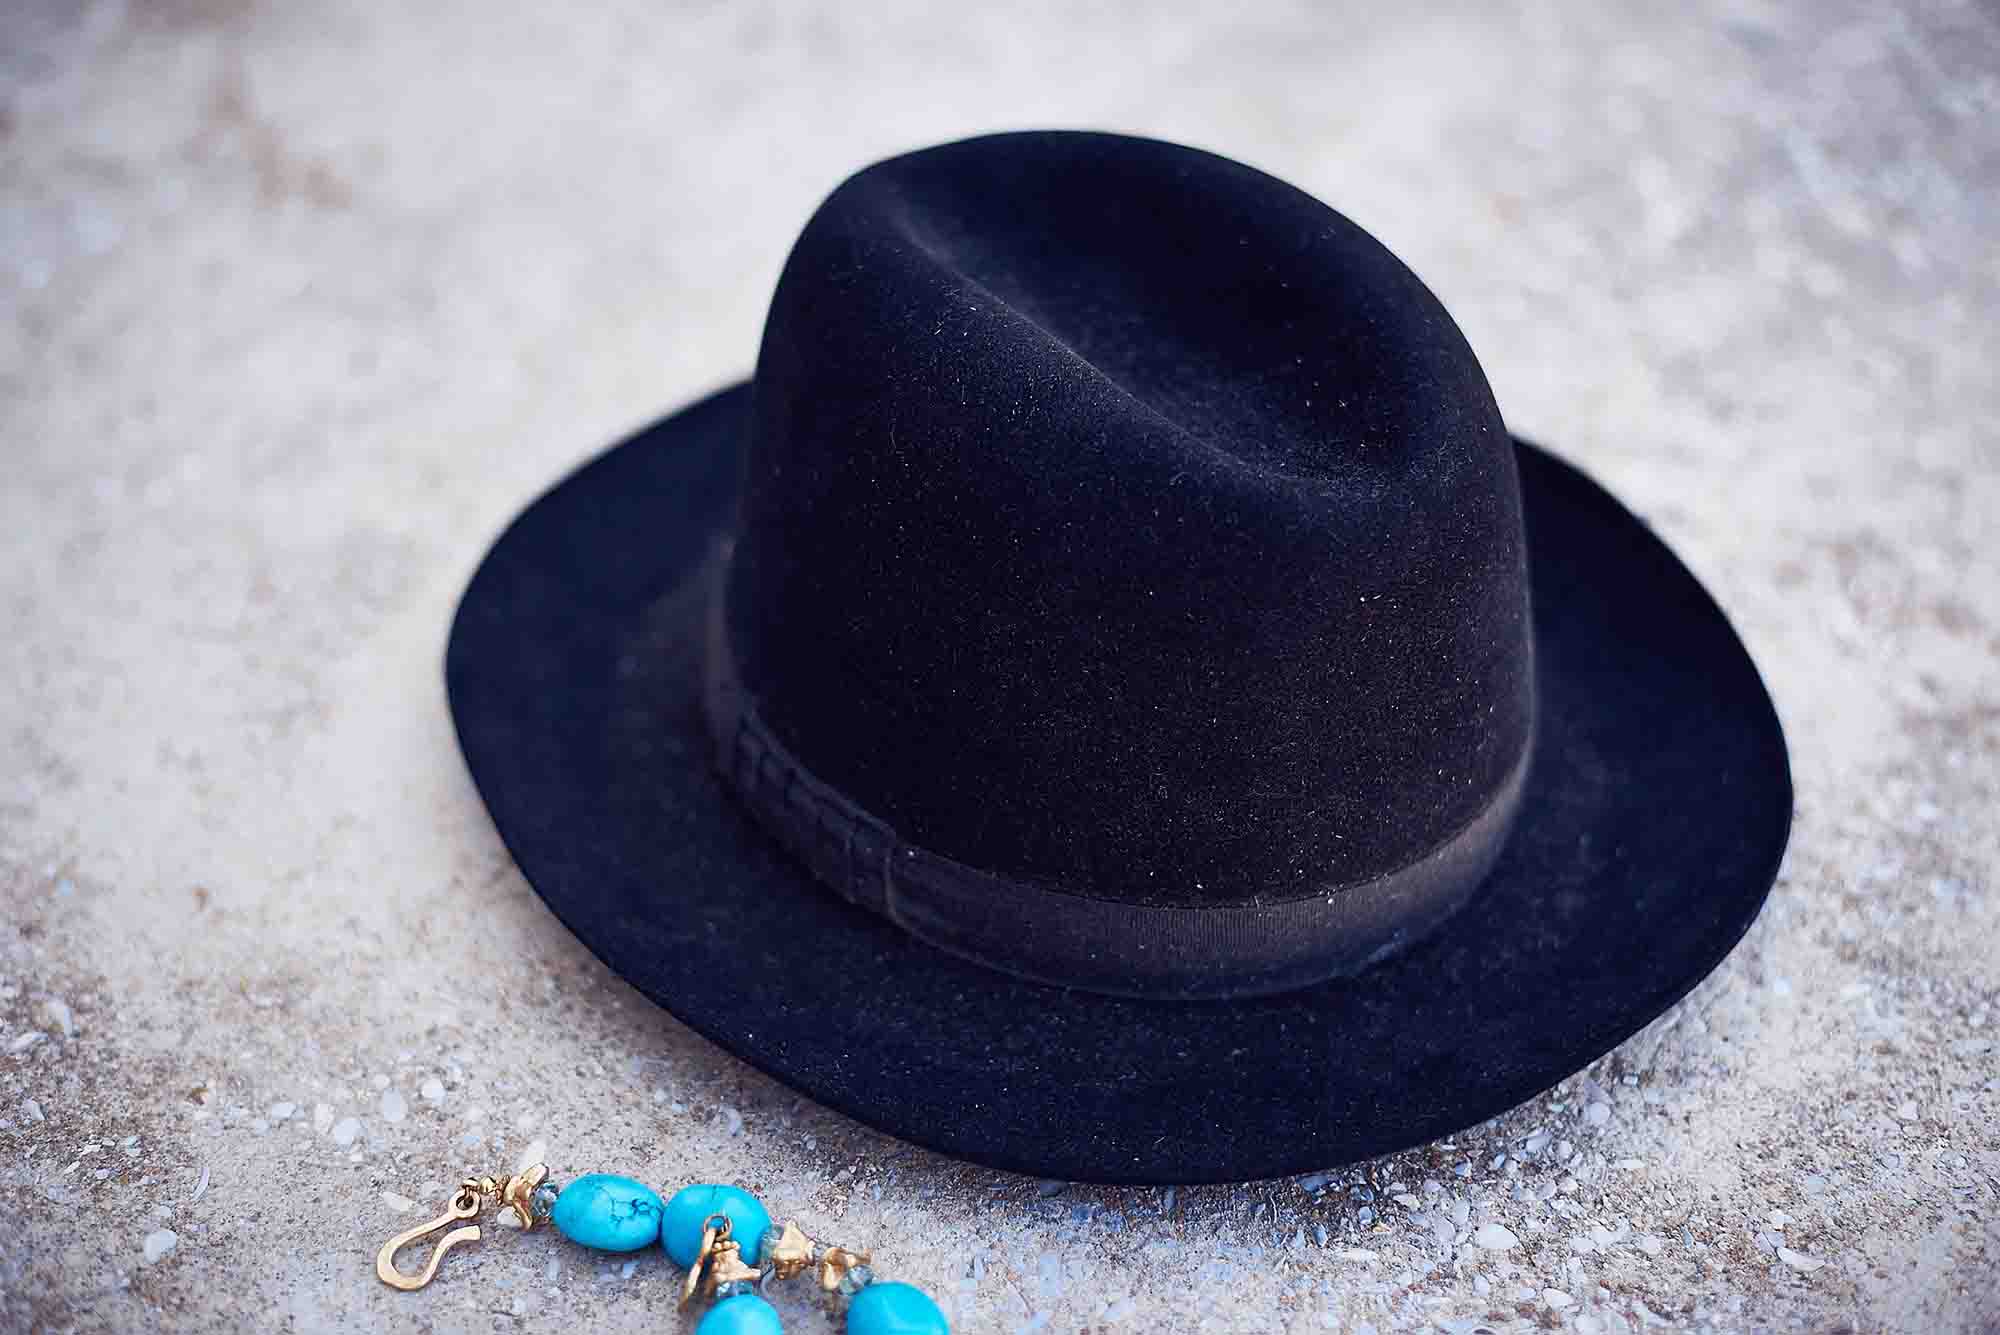 כובע לובשת וינטג מחיר 200 שח צילום kim kandler, מגזין אופנה